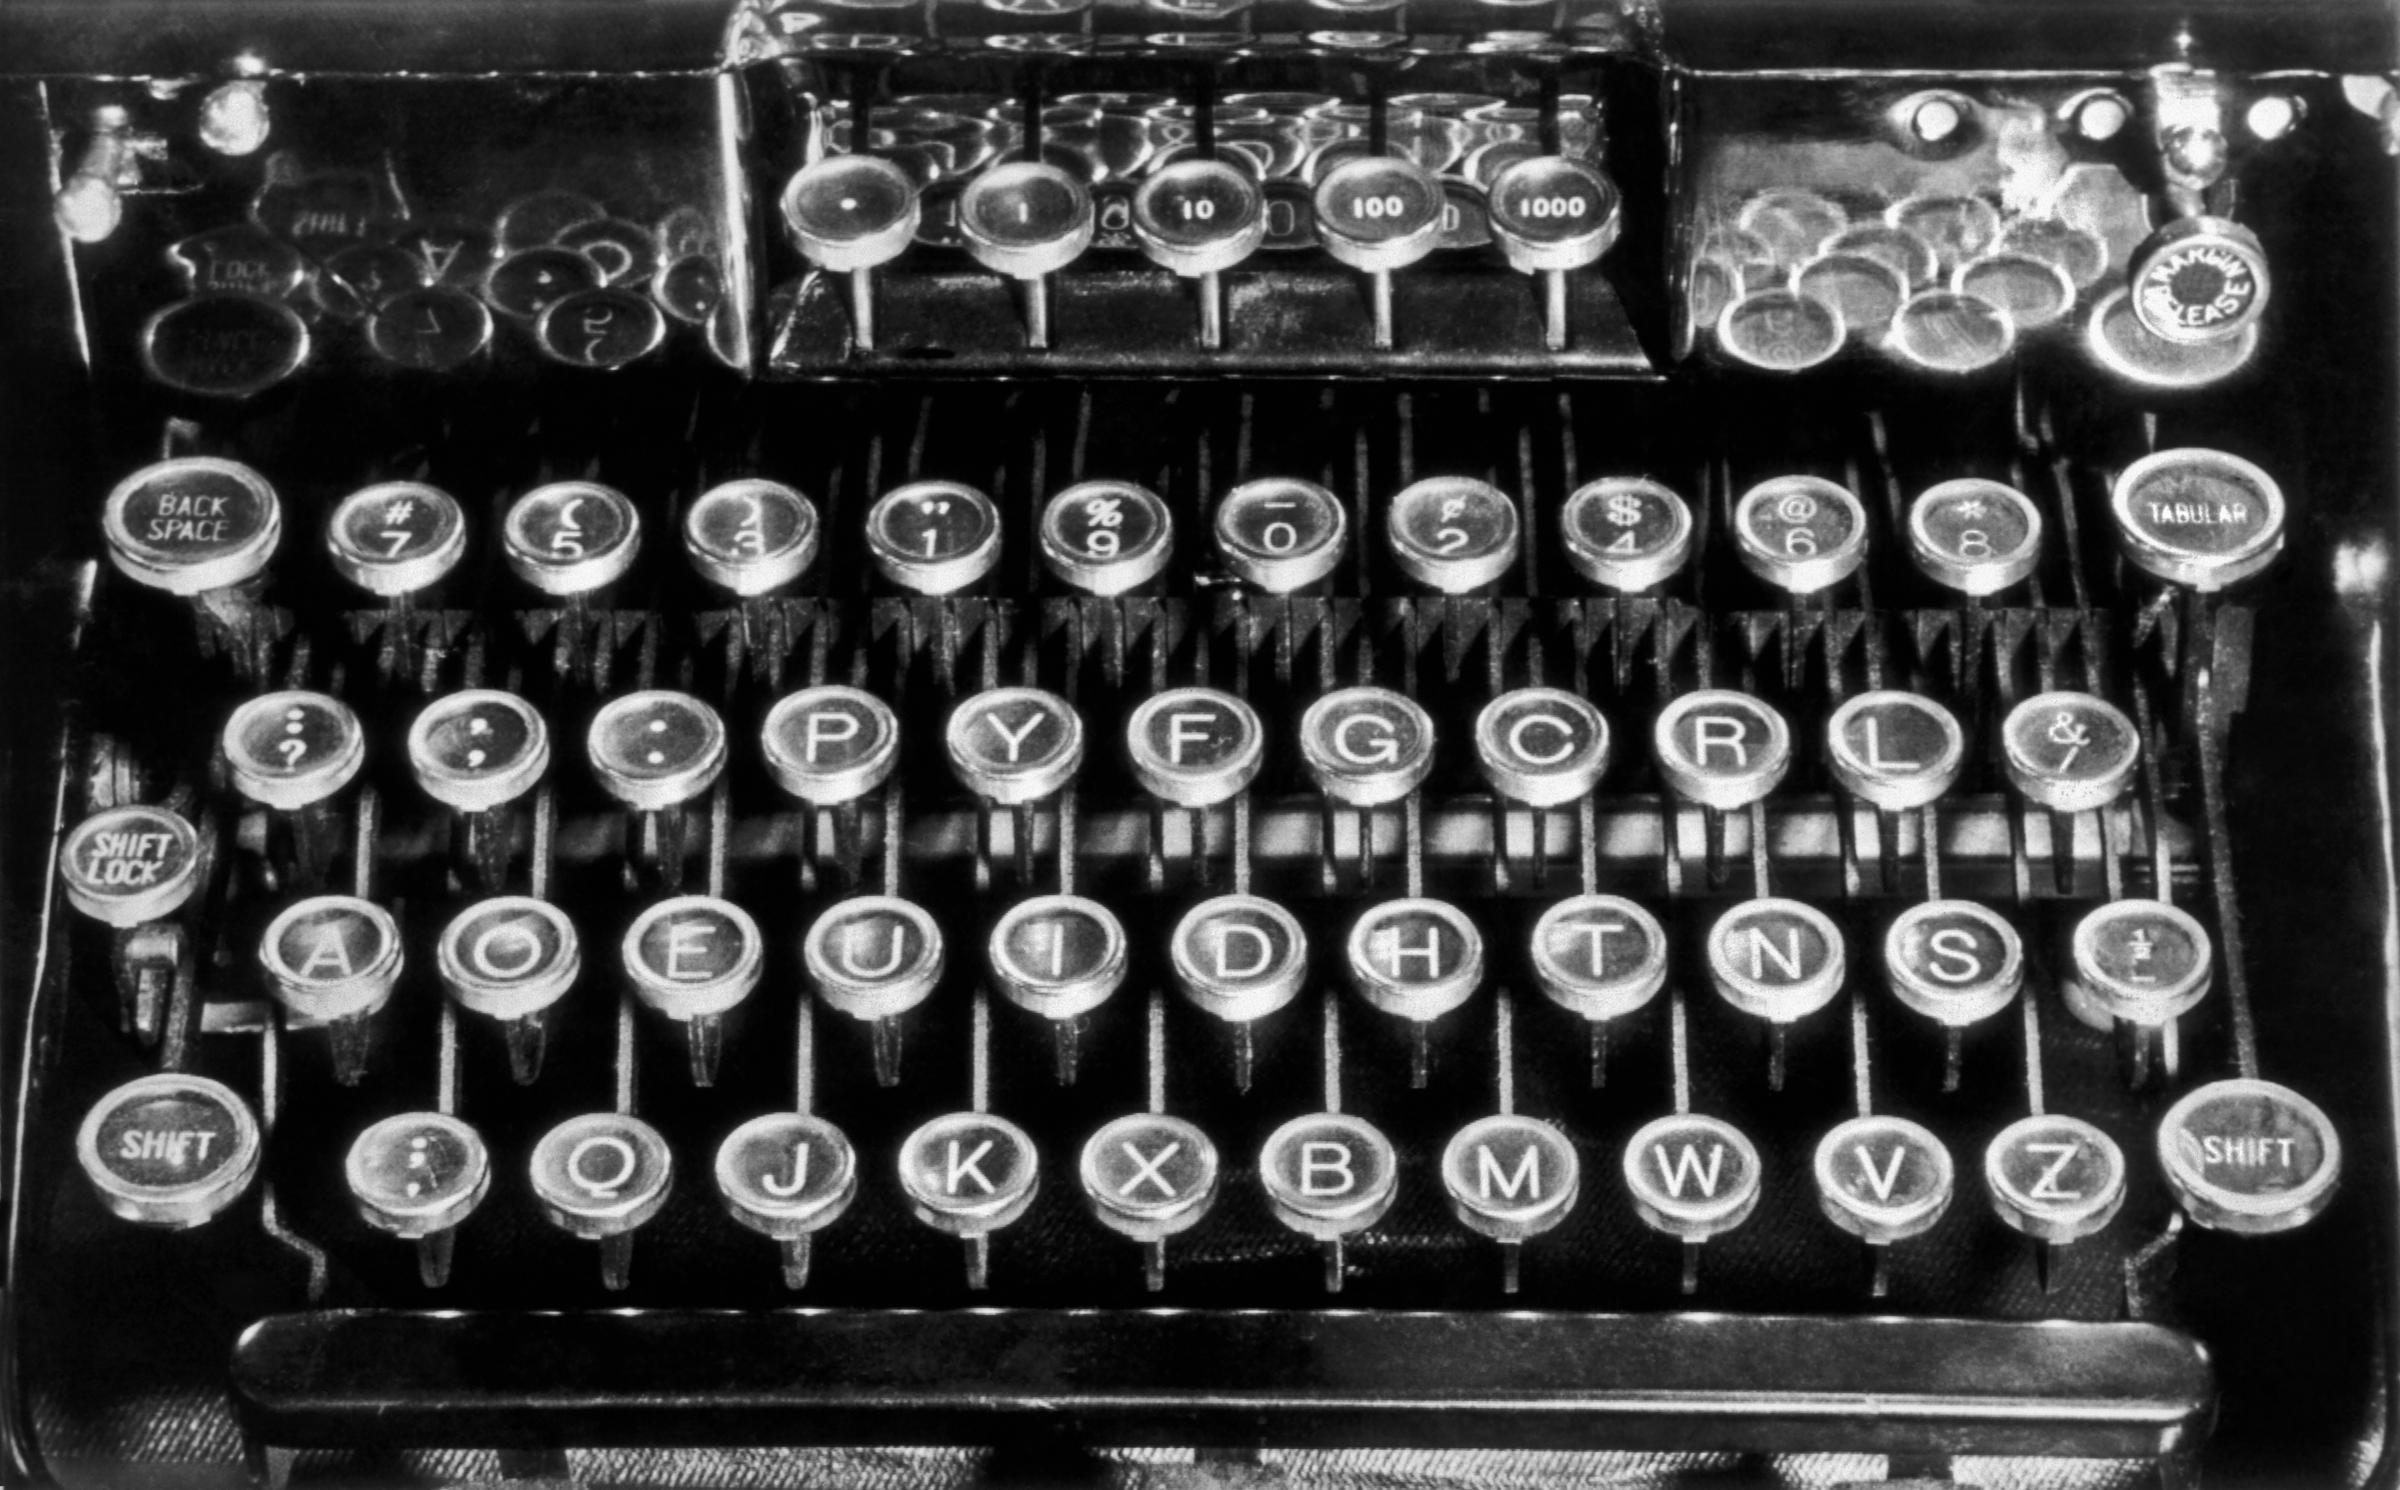 big bang theory typewriter keyboard